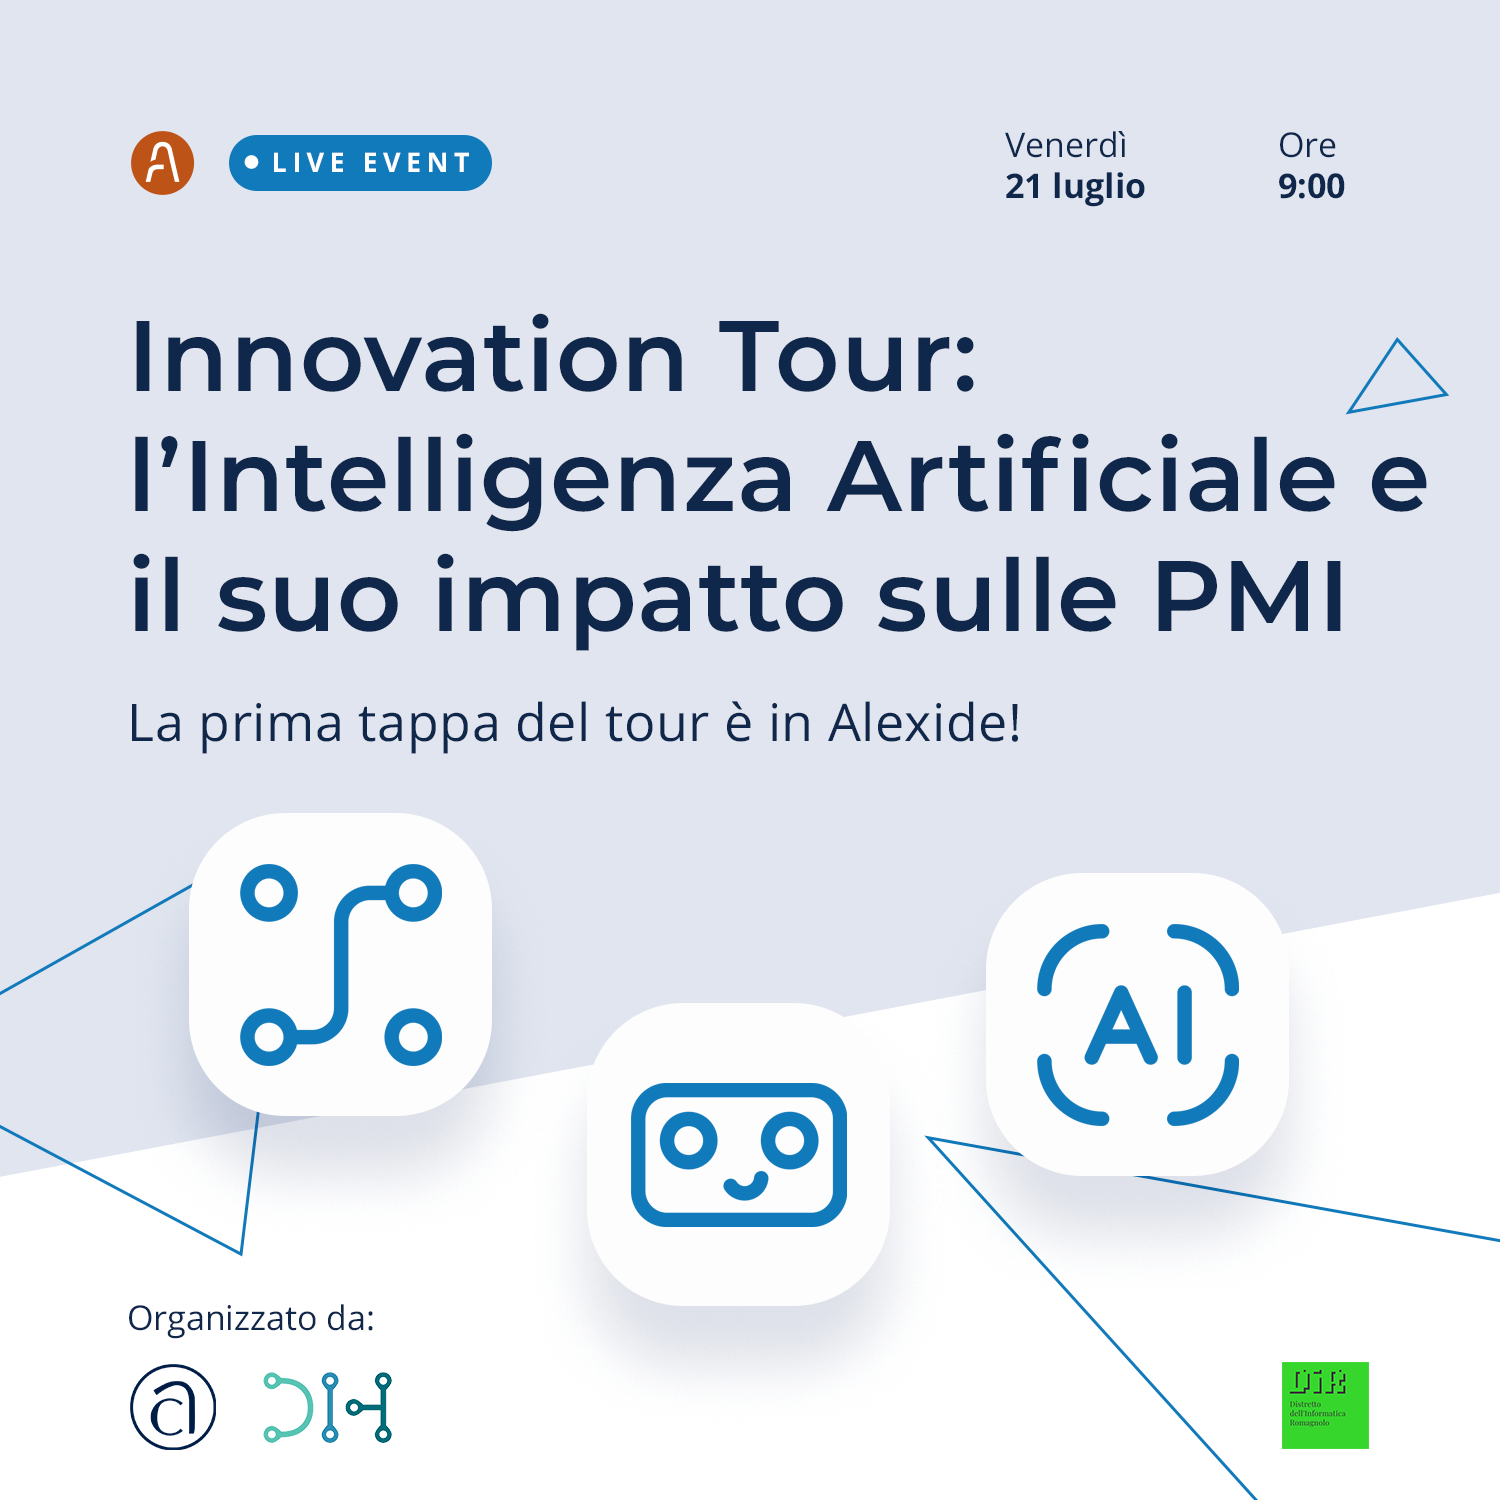 Innovation Tour sul tema dell’Intelligenza Artificiale